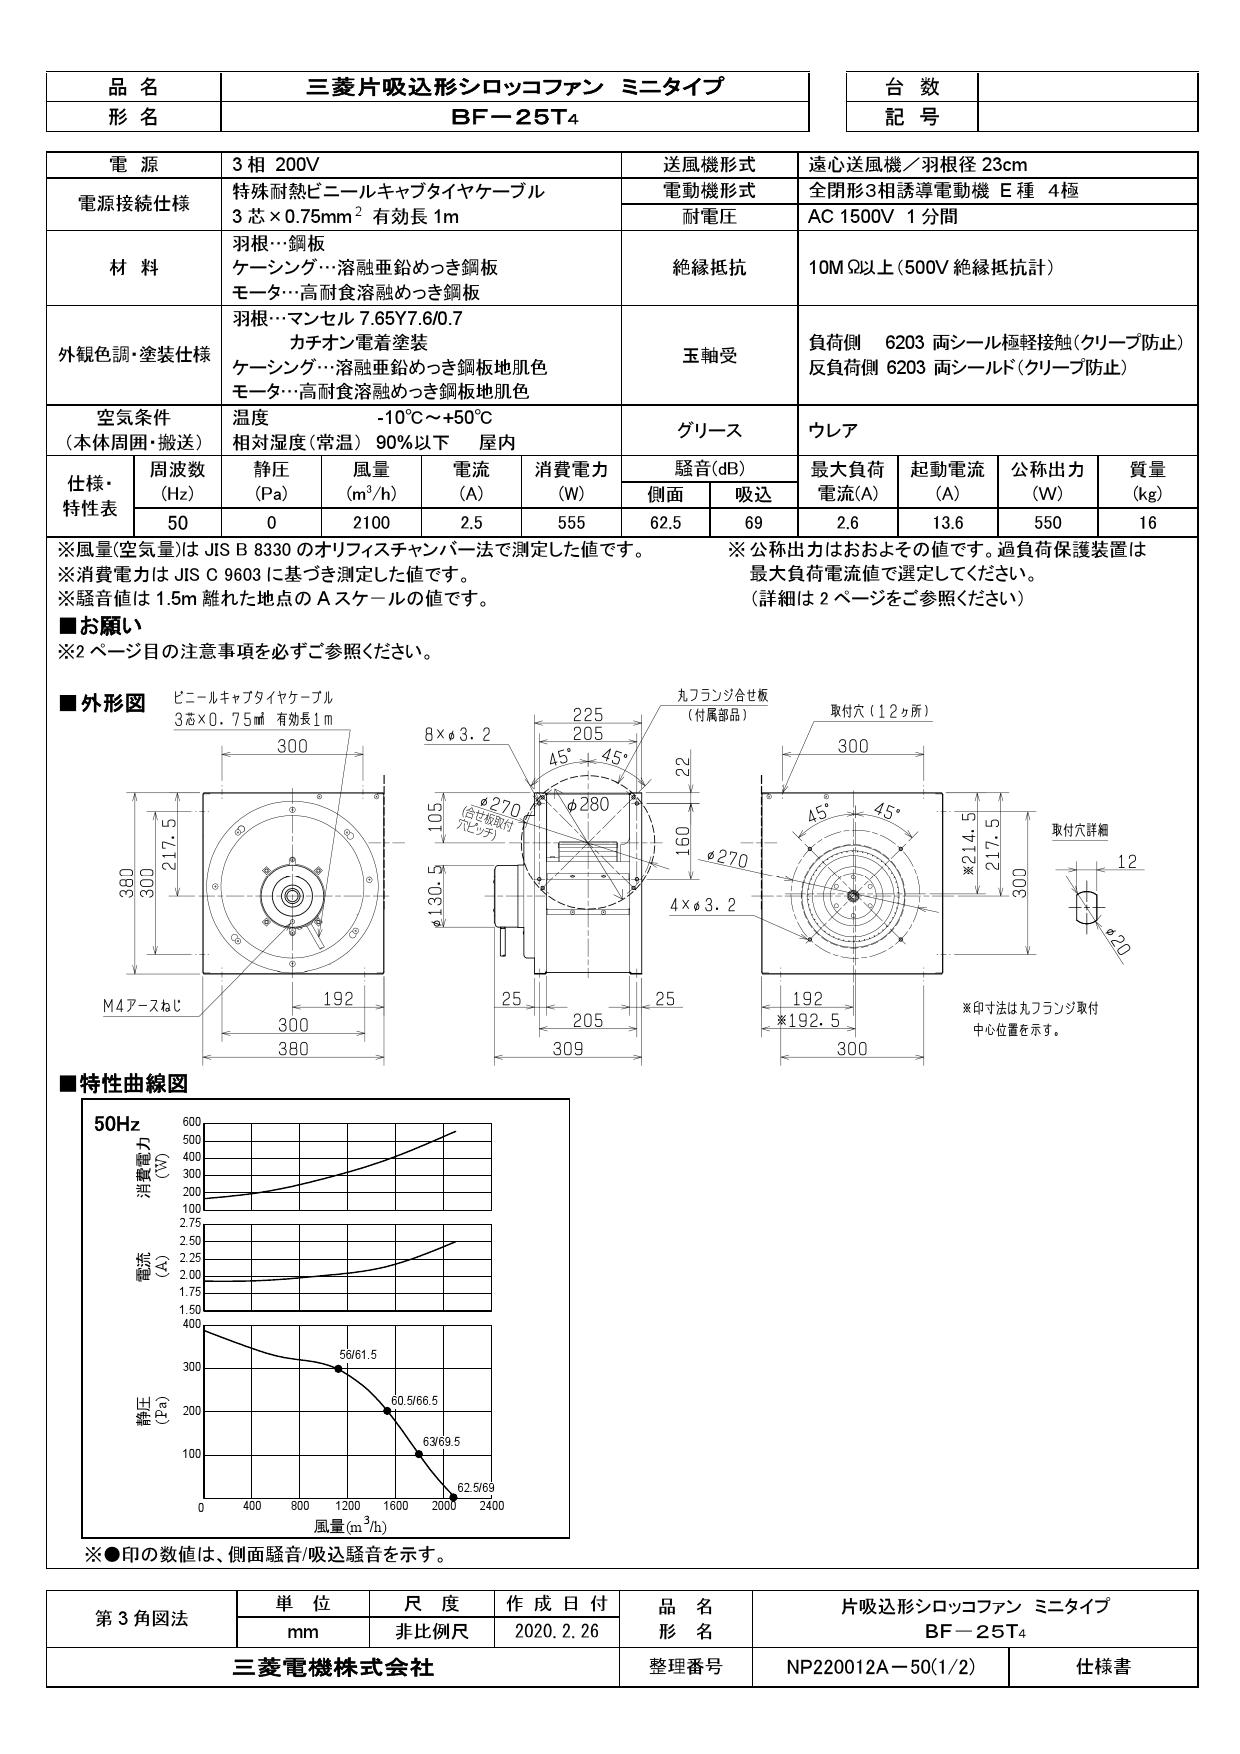 三菱電機 BF-25T4取扱説明書 納入仕様図 | 通販 プロストア ダイレクト